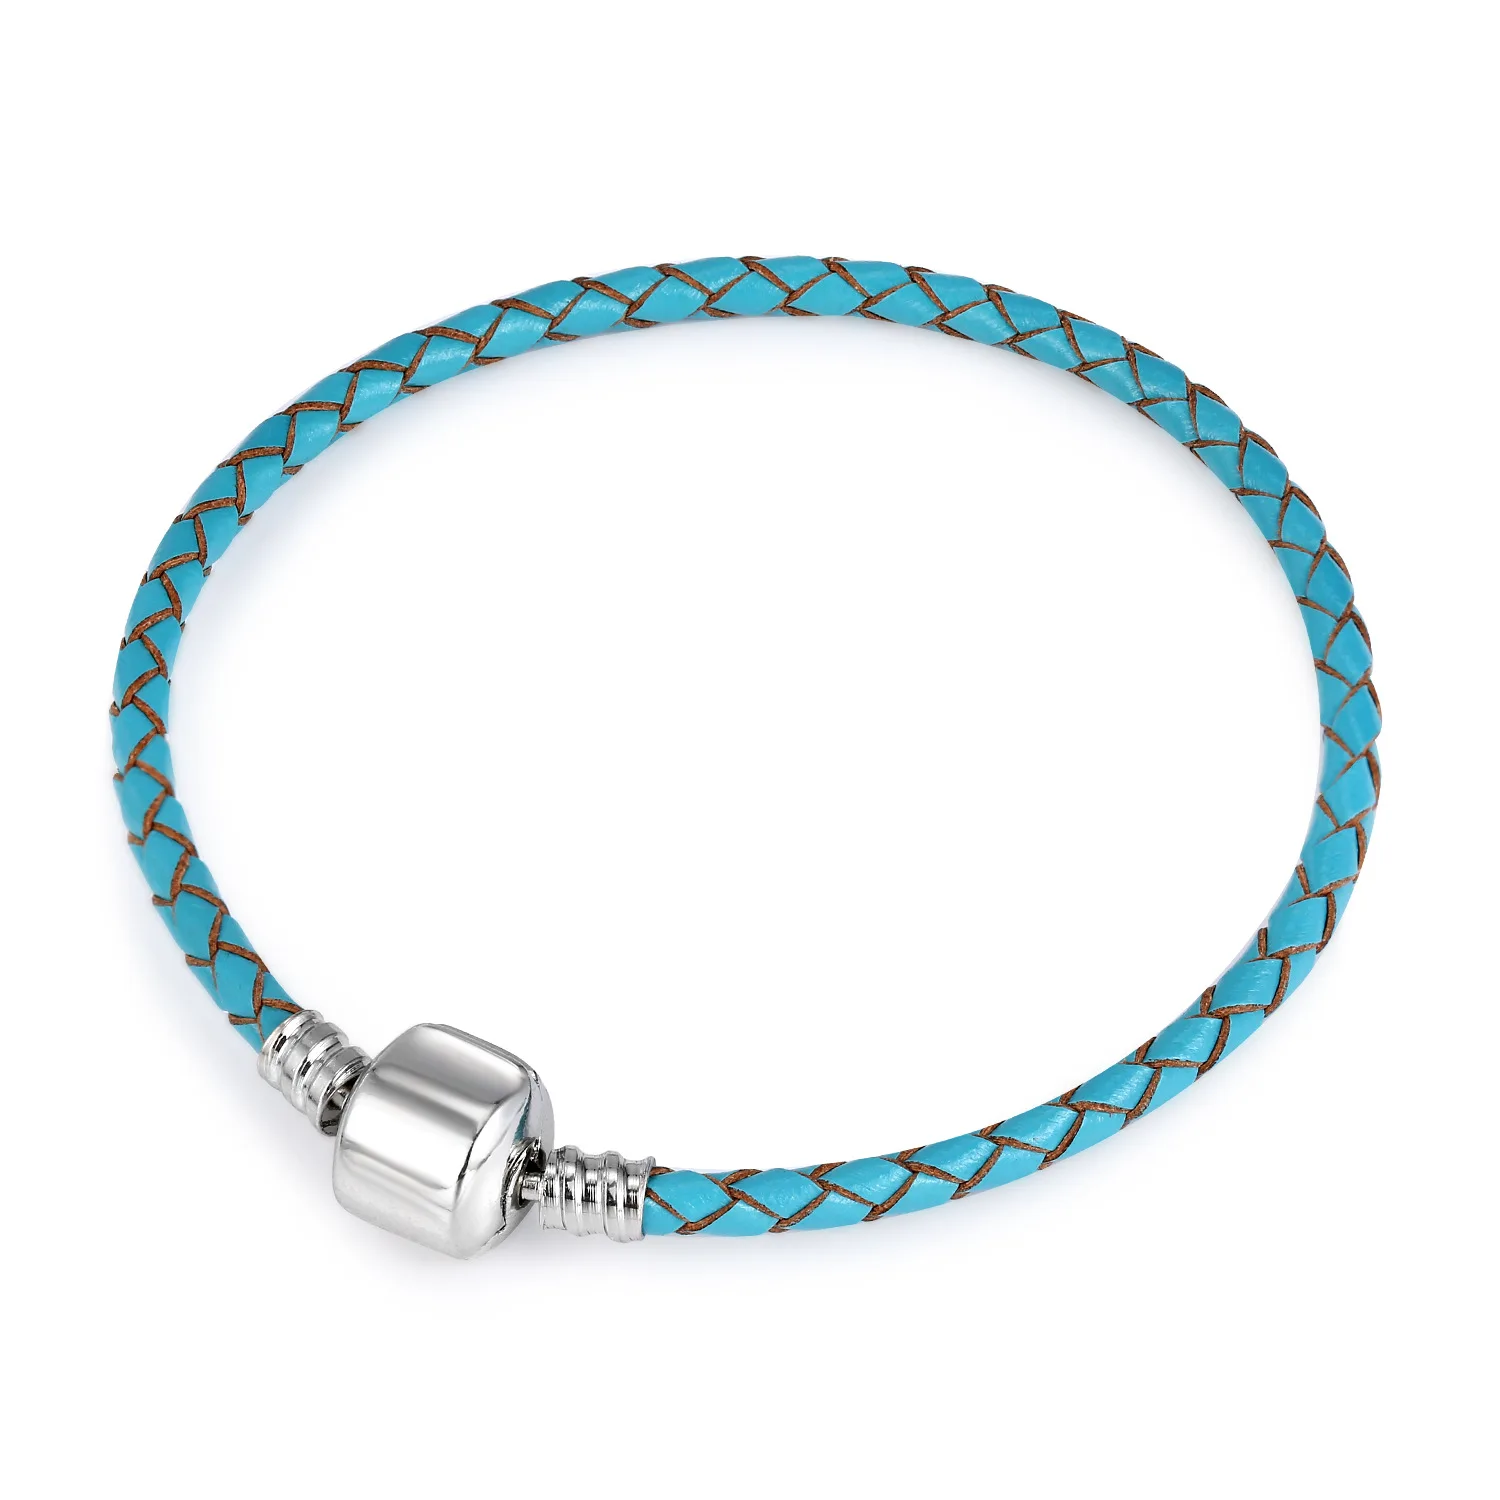 Woven Double Leather Blue Mix Bracelet